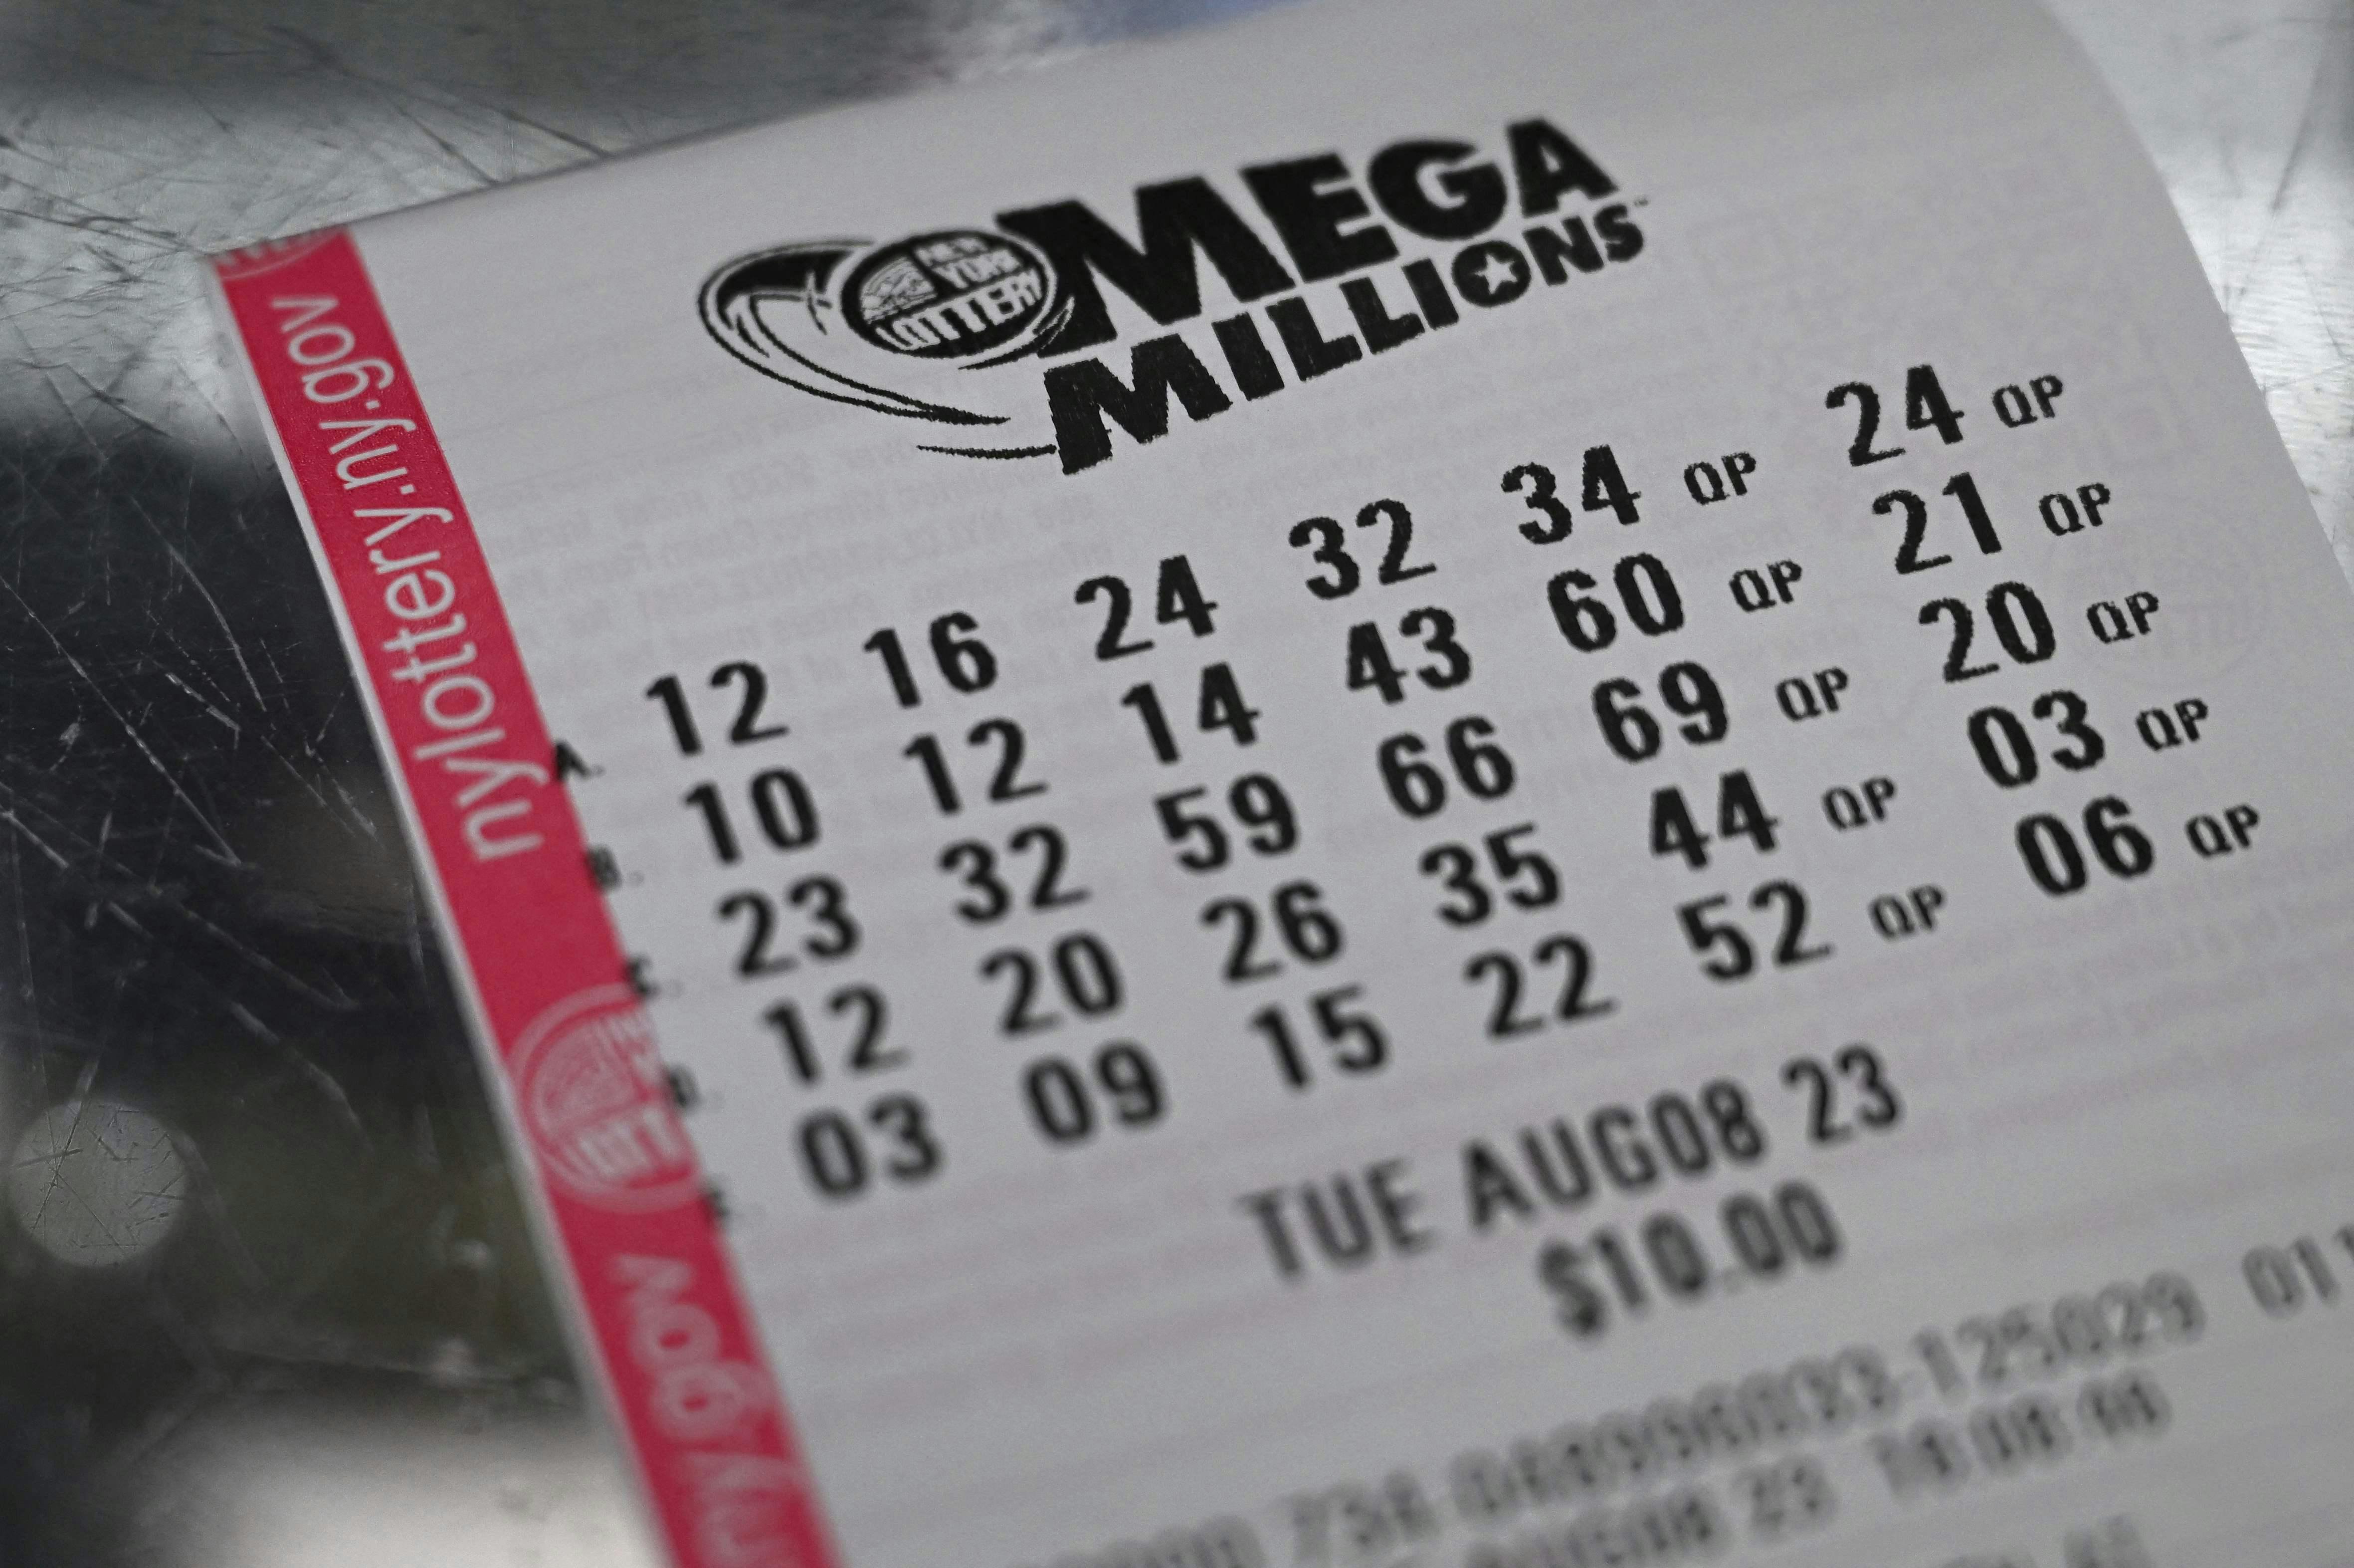 Lottokuponen er udstedt i Florida, men vinderen eller vinderne har endnu ikke meldt sig.